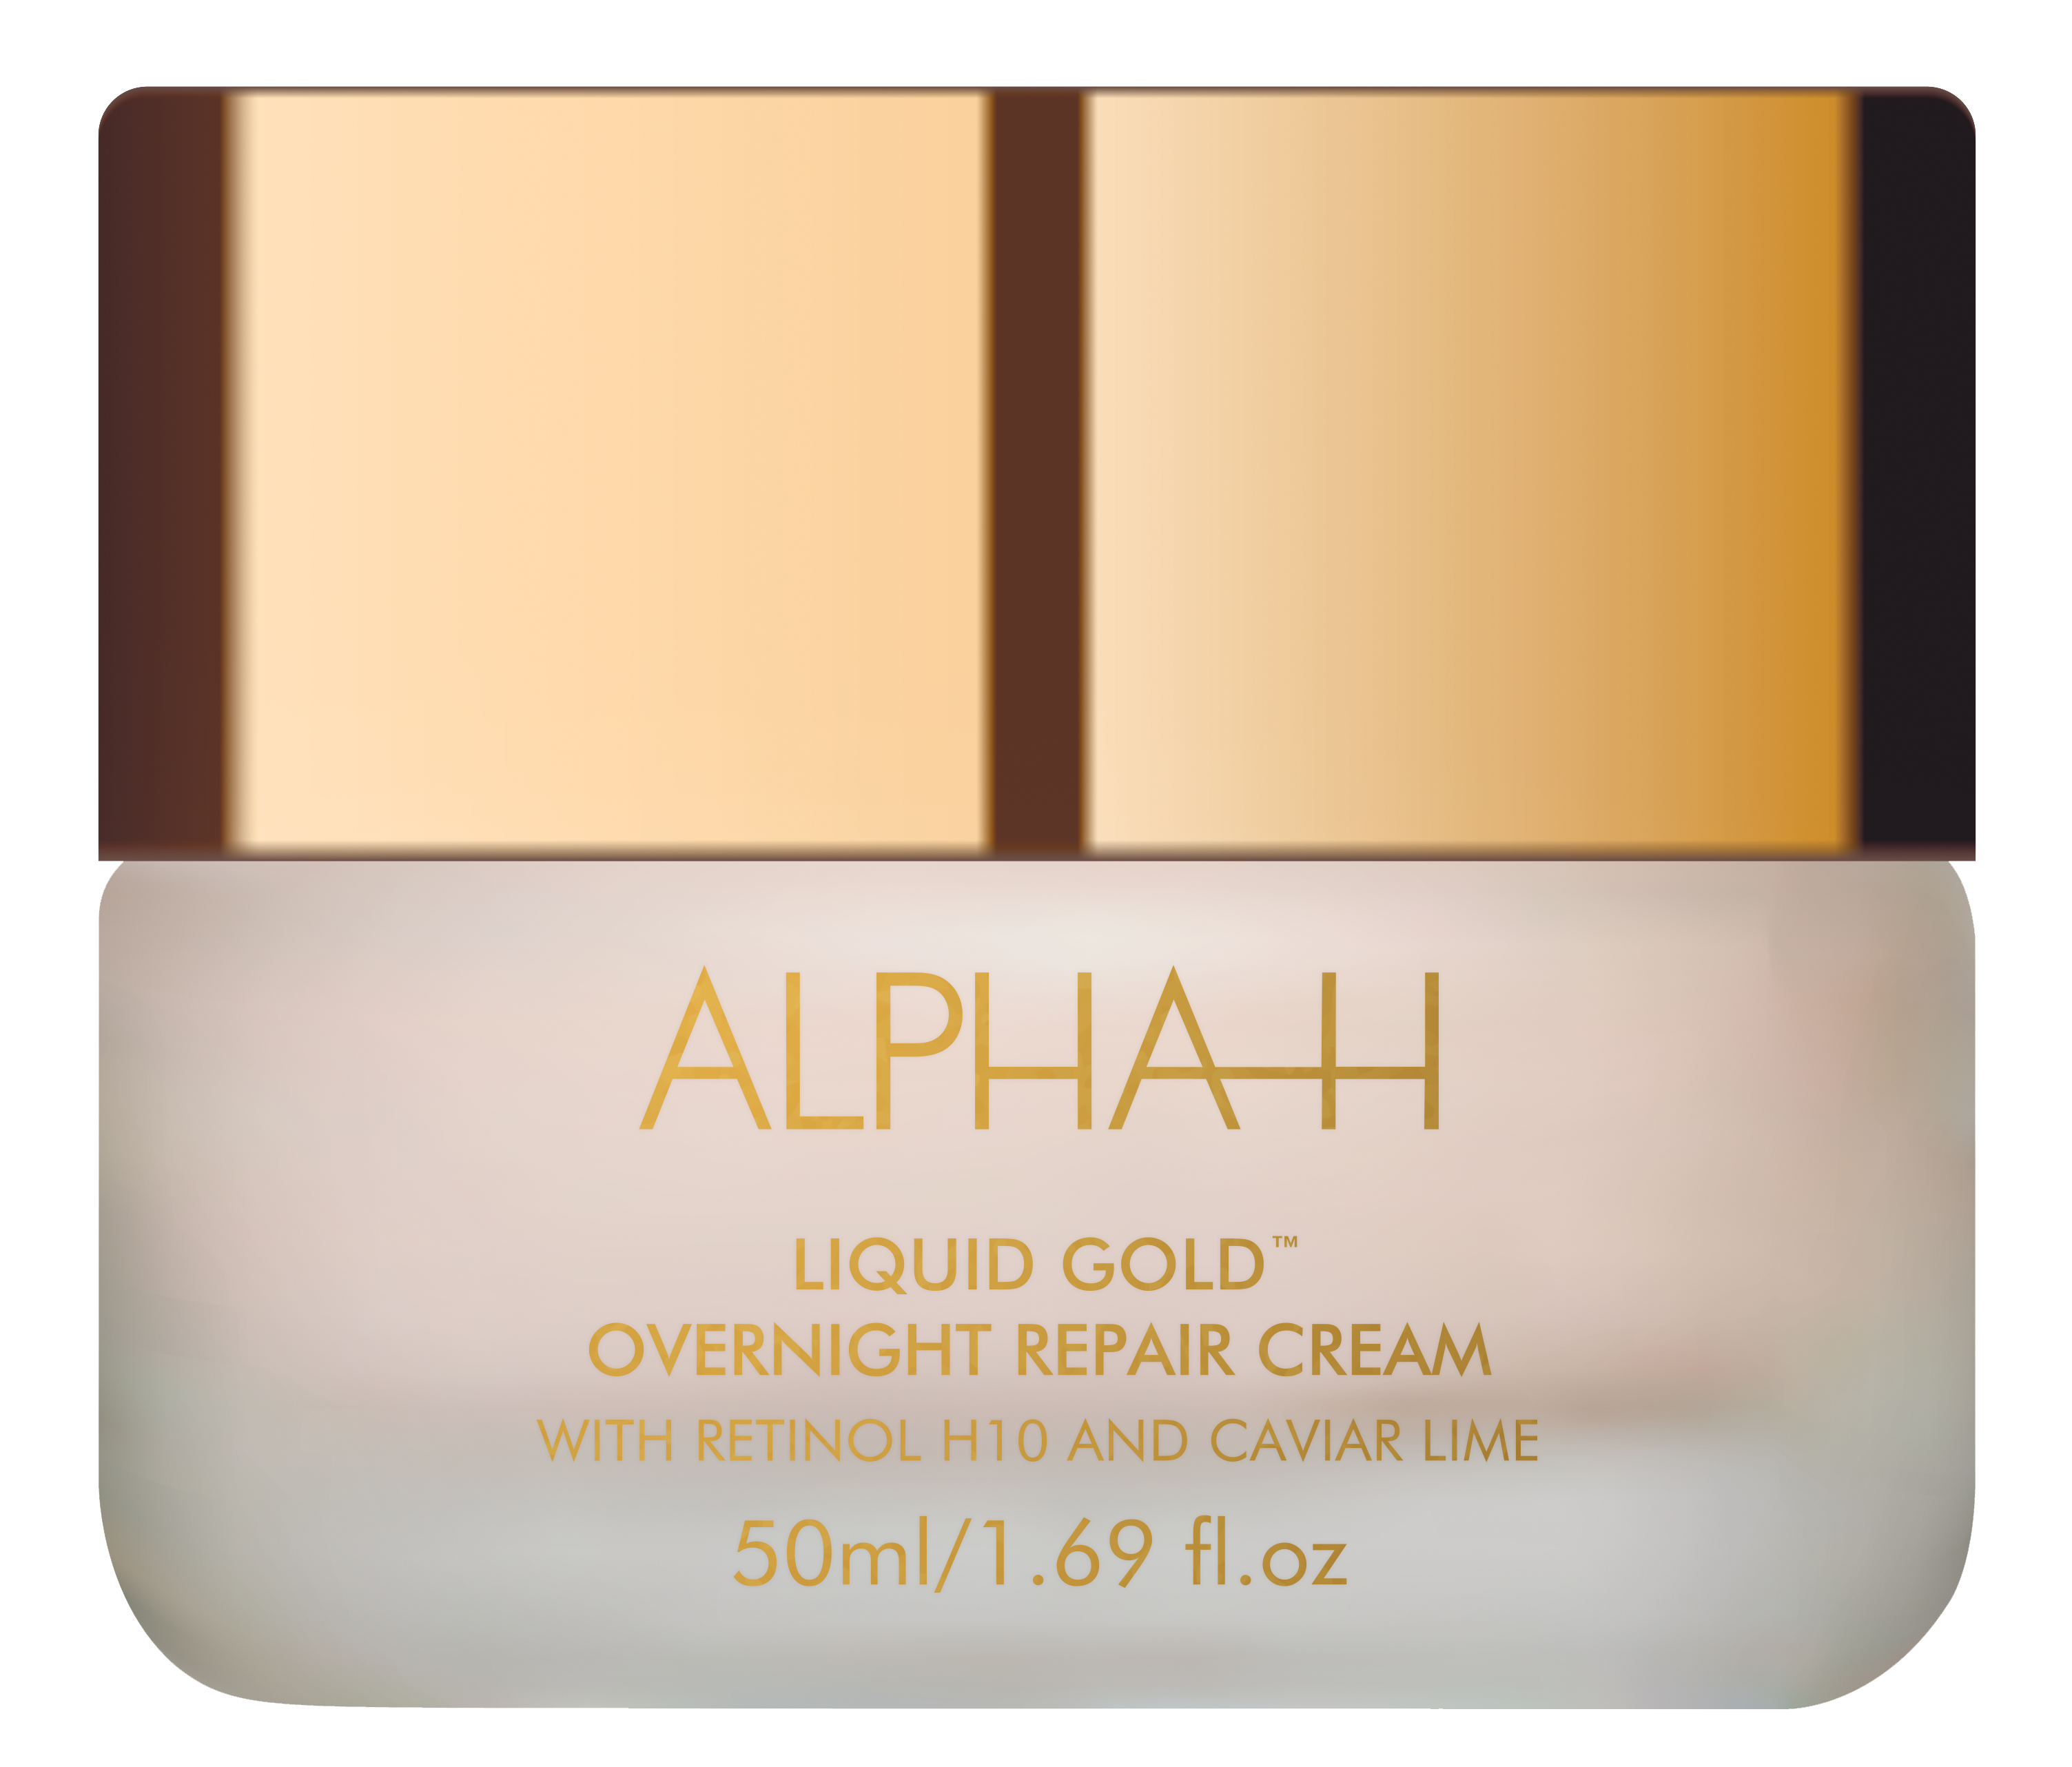 Liquid Gold Overnight Repair Cream